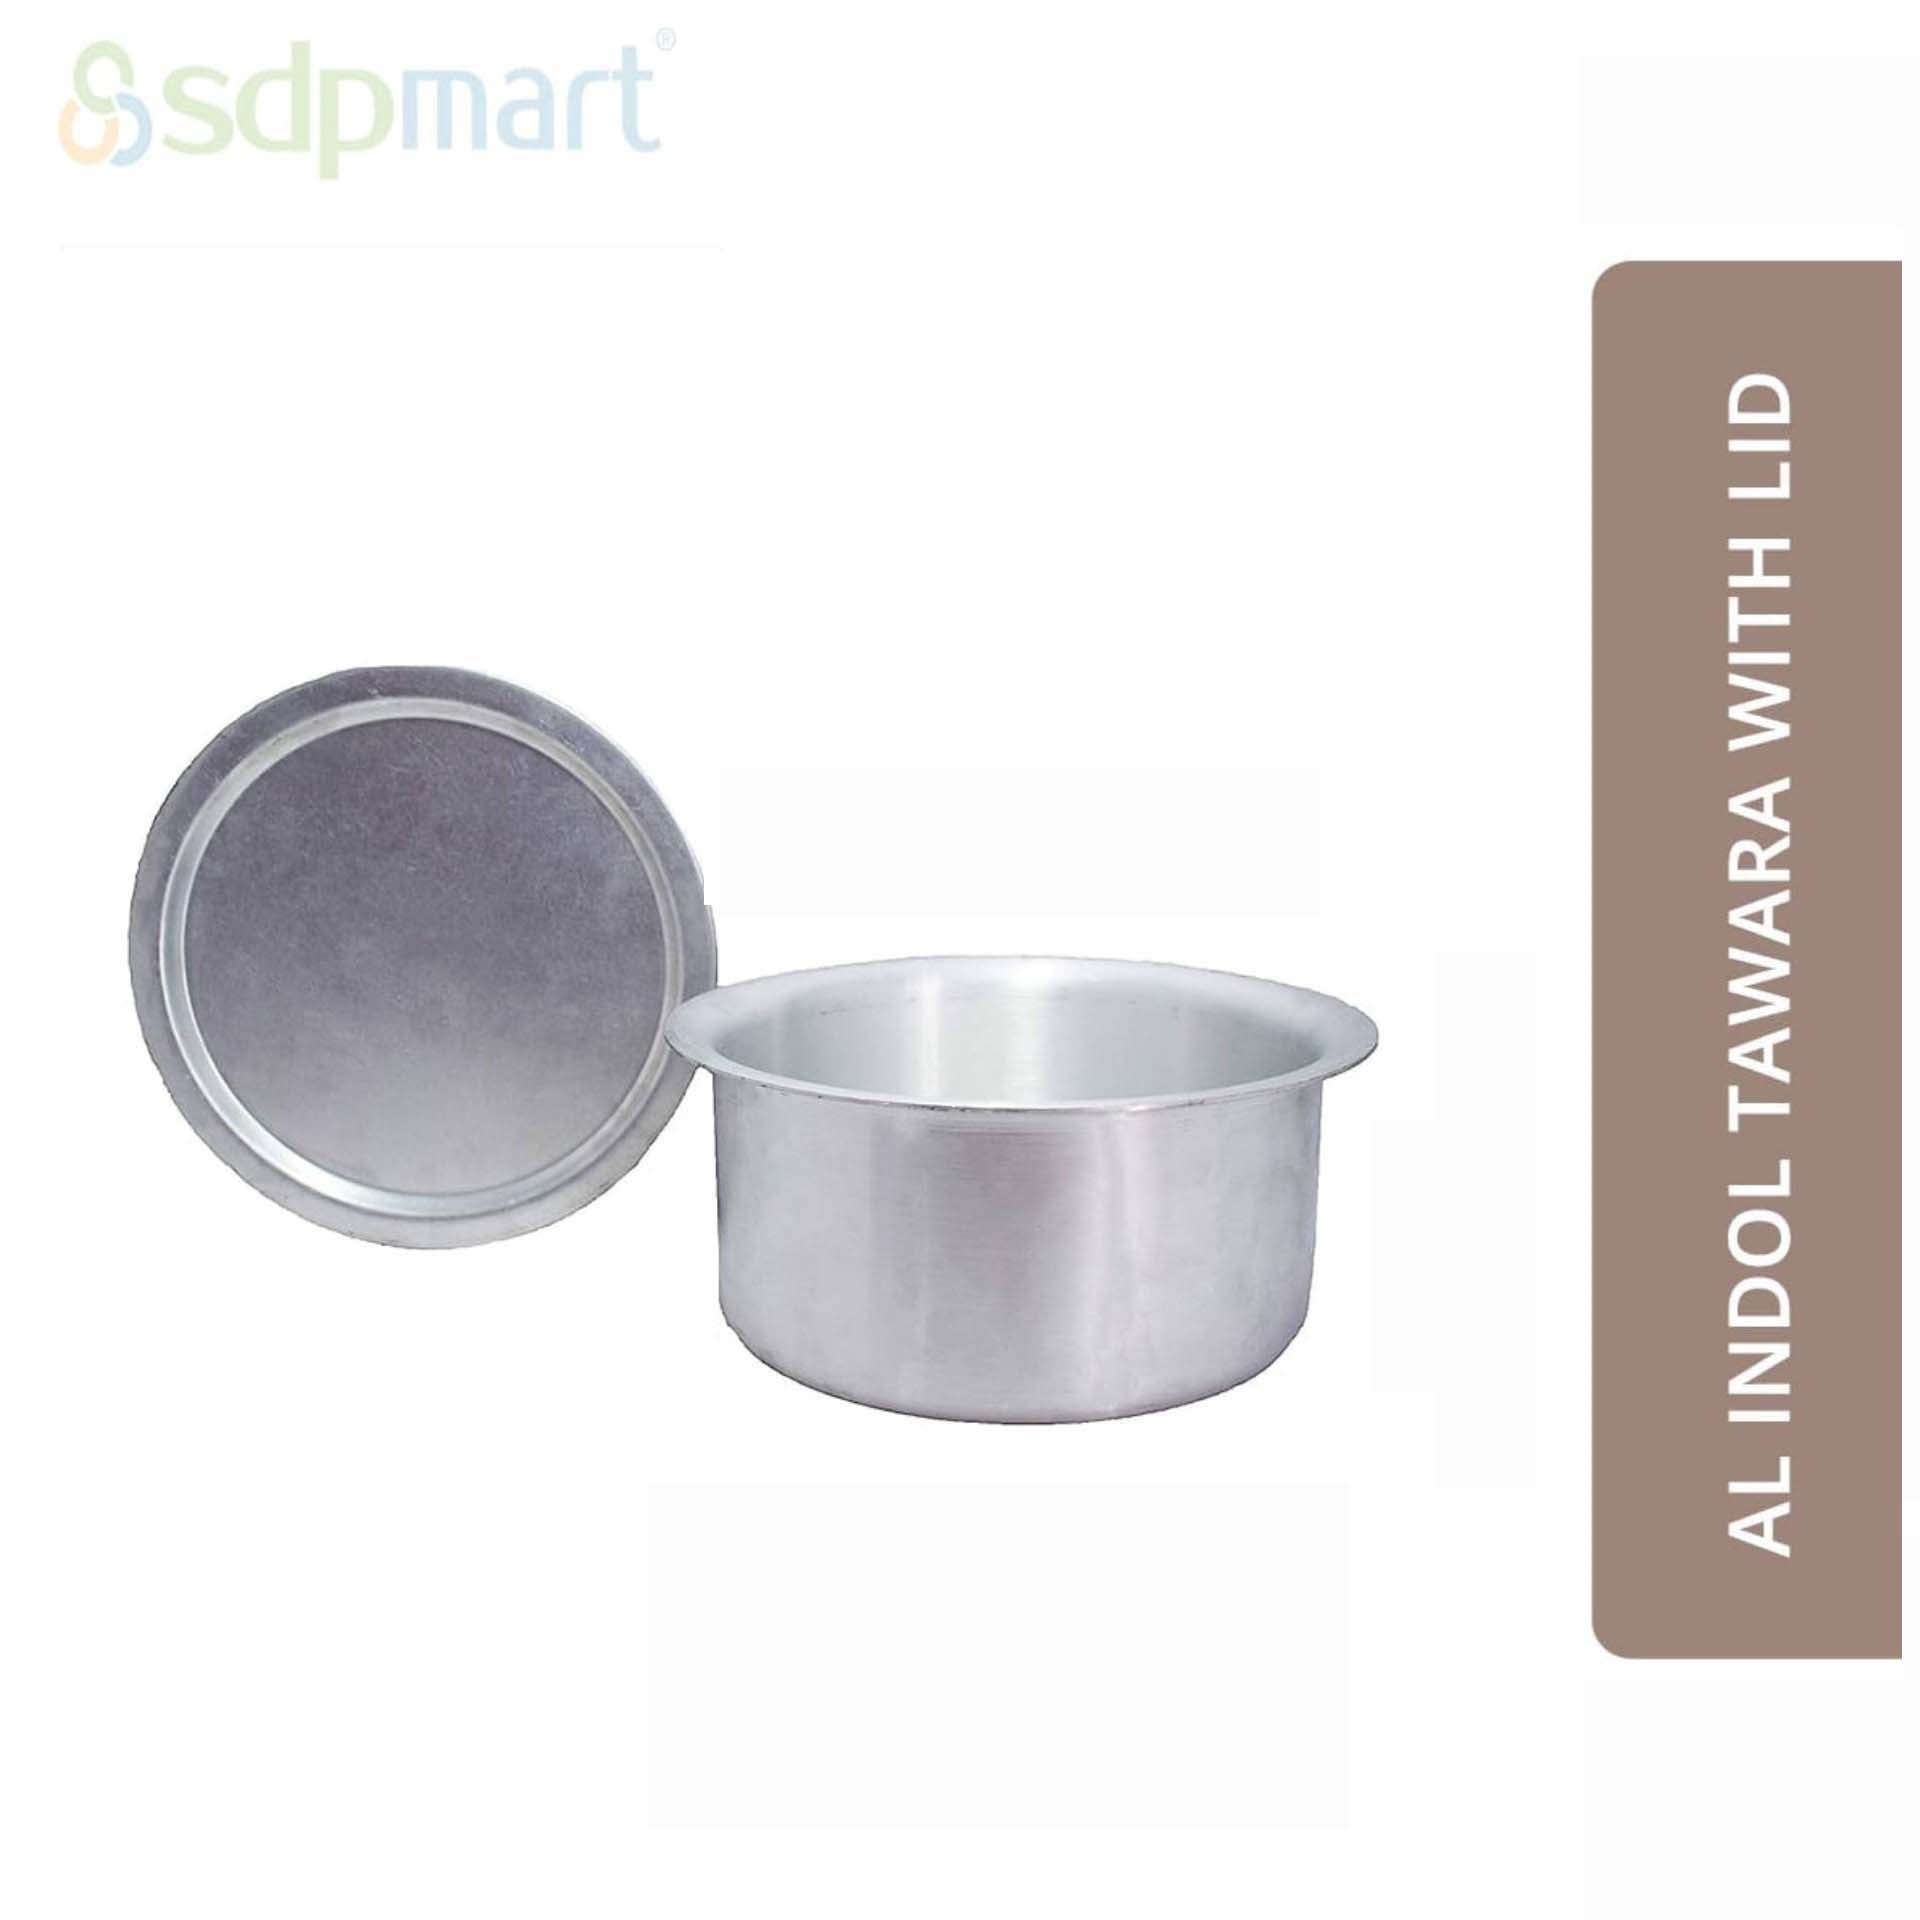 SDPMart Aluminum Indol Tawara Small W/Lid